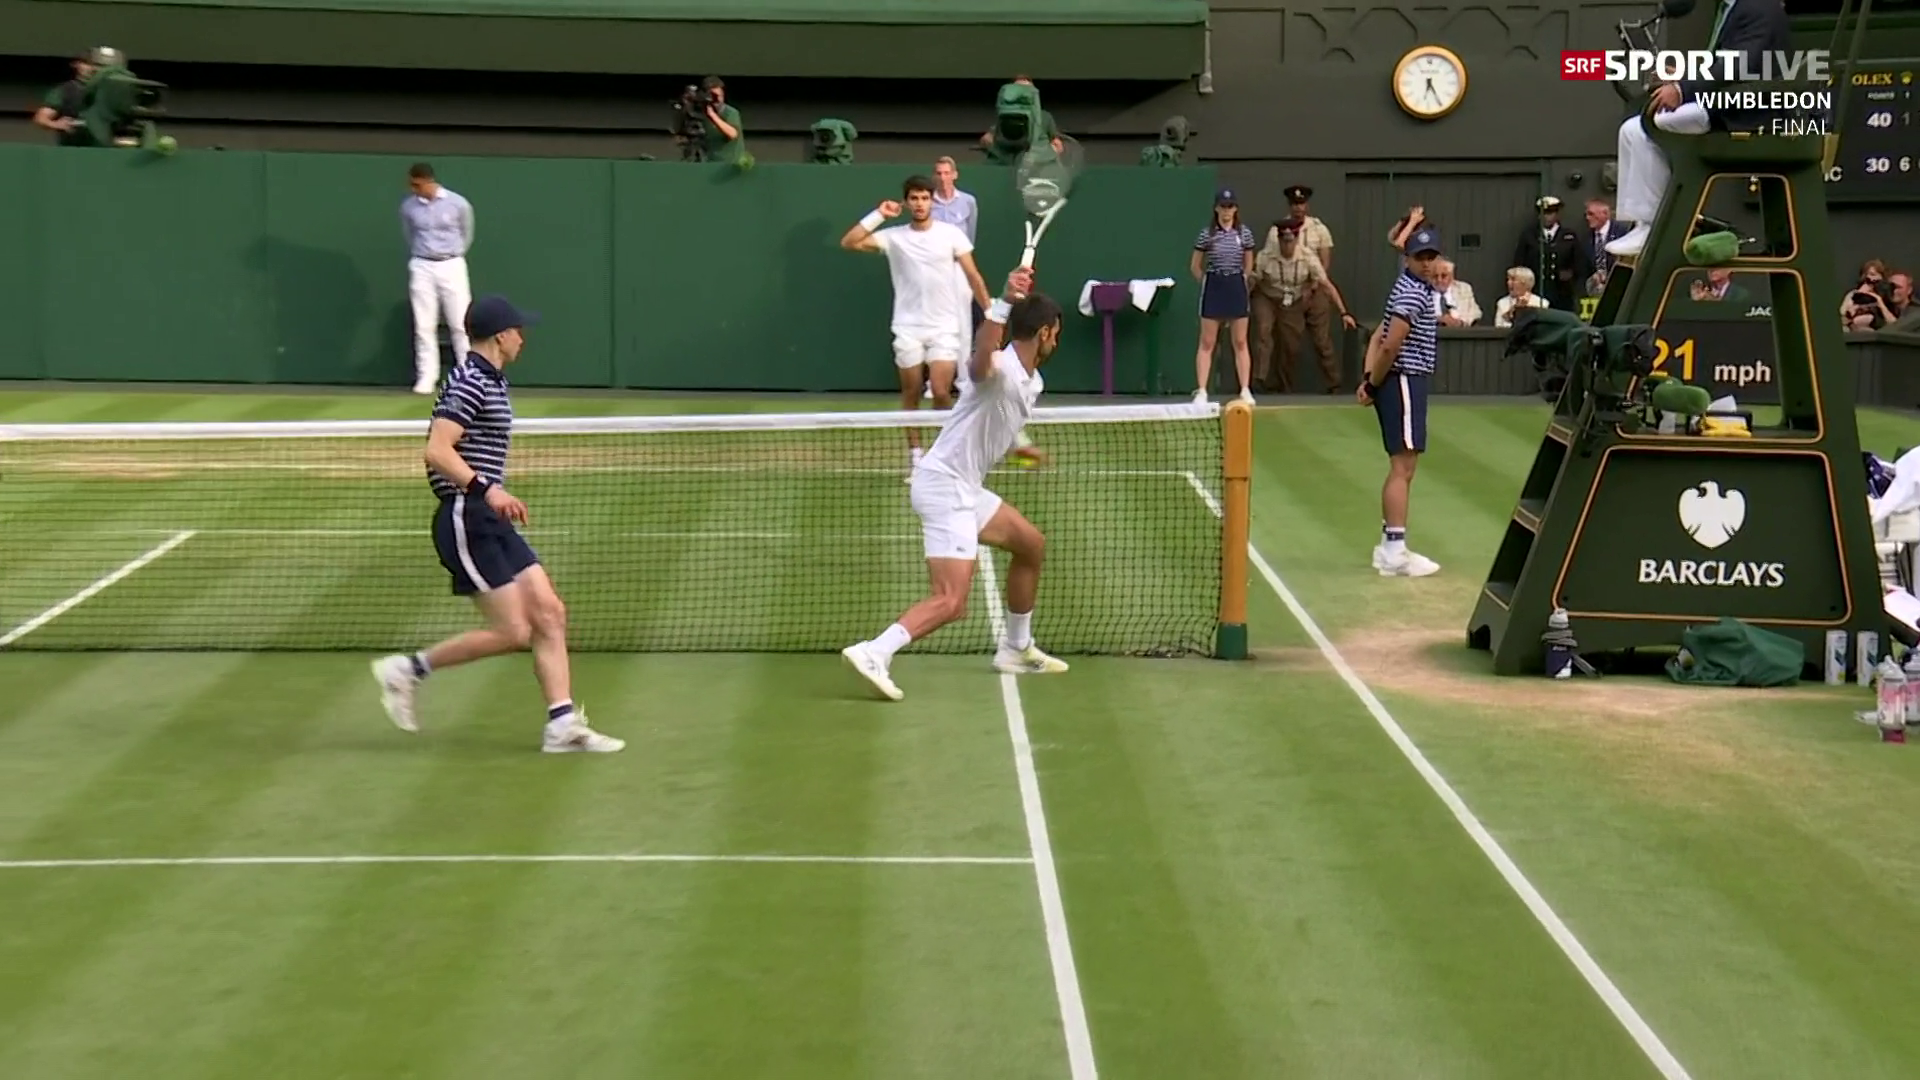 Das Unmögliche möglich gemacht - Alcaraz entthront in atemberaubendem Wimbledon-Final Djokovic - Sport